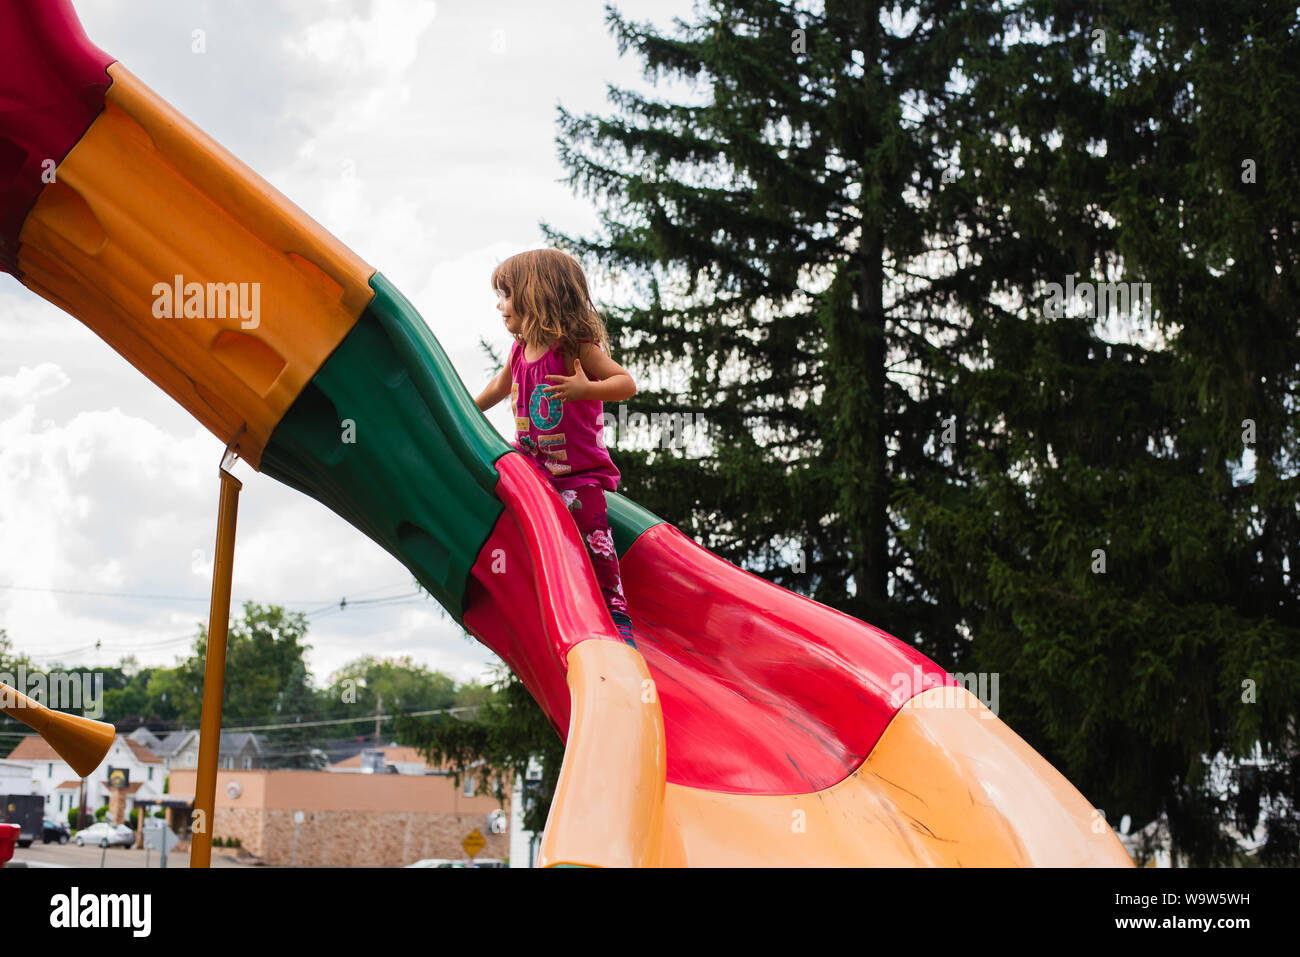 Una niña de 4 años de antigüedad en una colorida diapositiva en un parque. Foto de stock